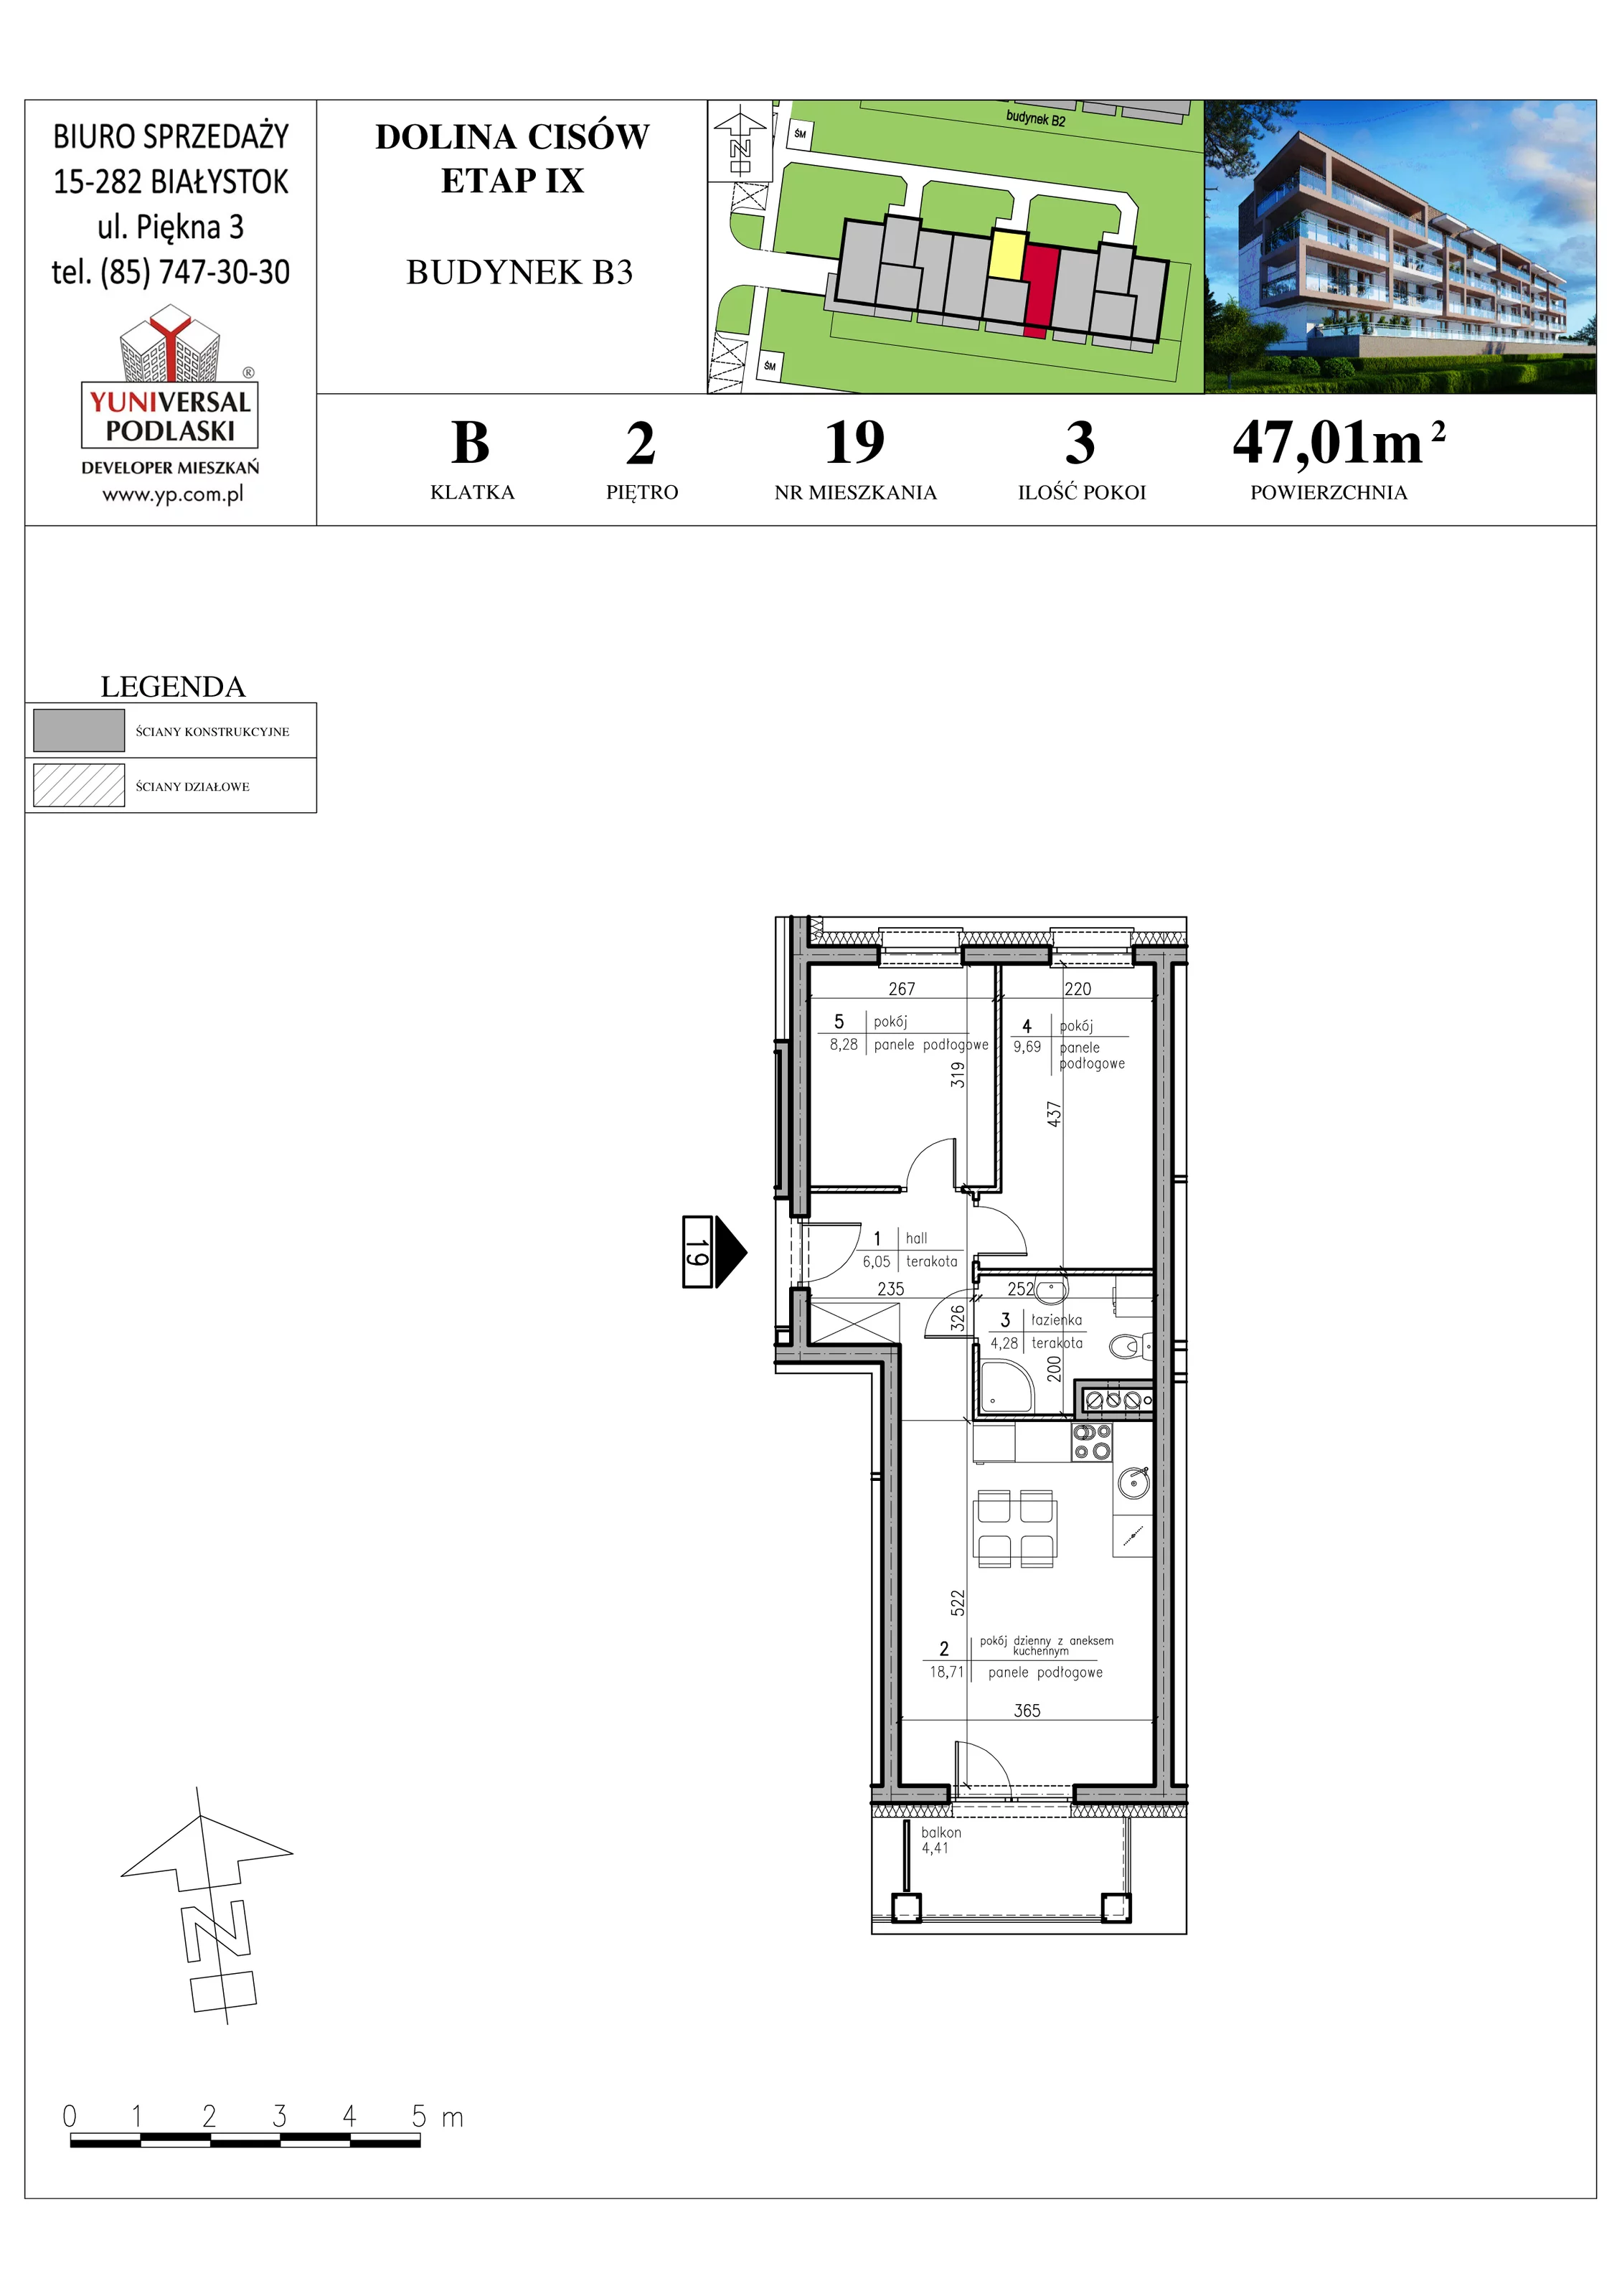 Mieszkanie 47,01 m², piętro 2, oferta nr B3-19, Osiedle Dolina Cisów - Etap IX, Wasilków, ul. Nadawki